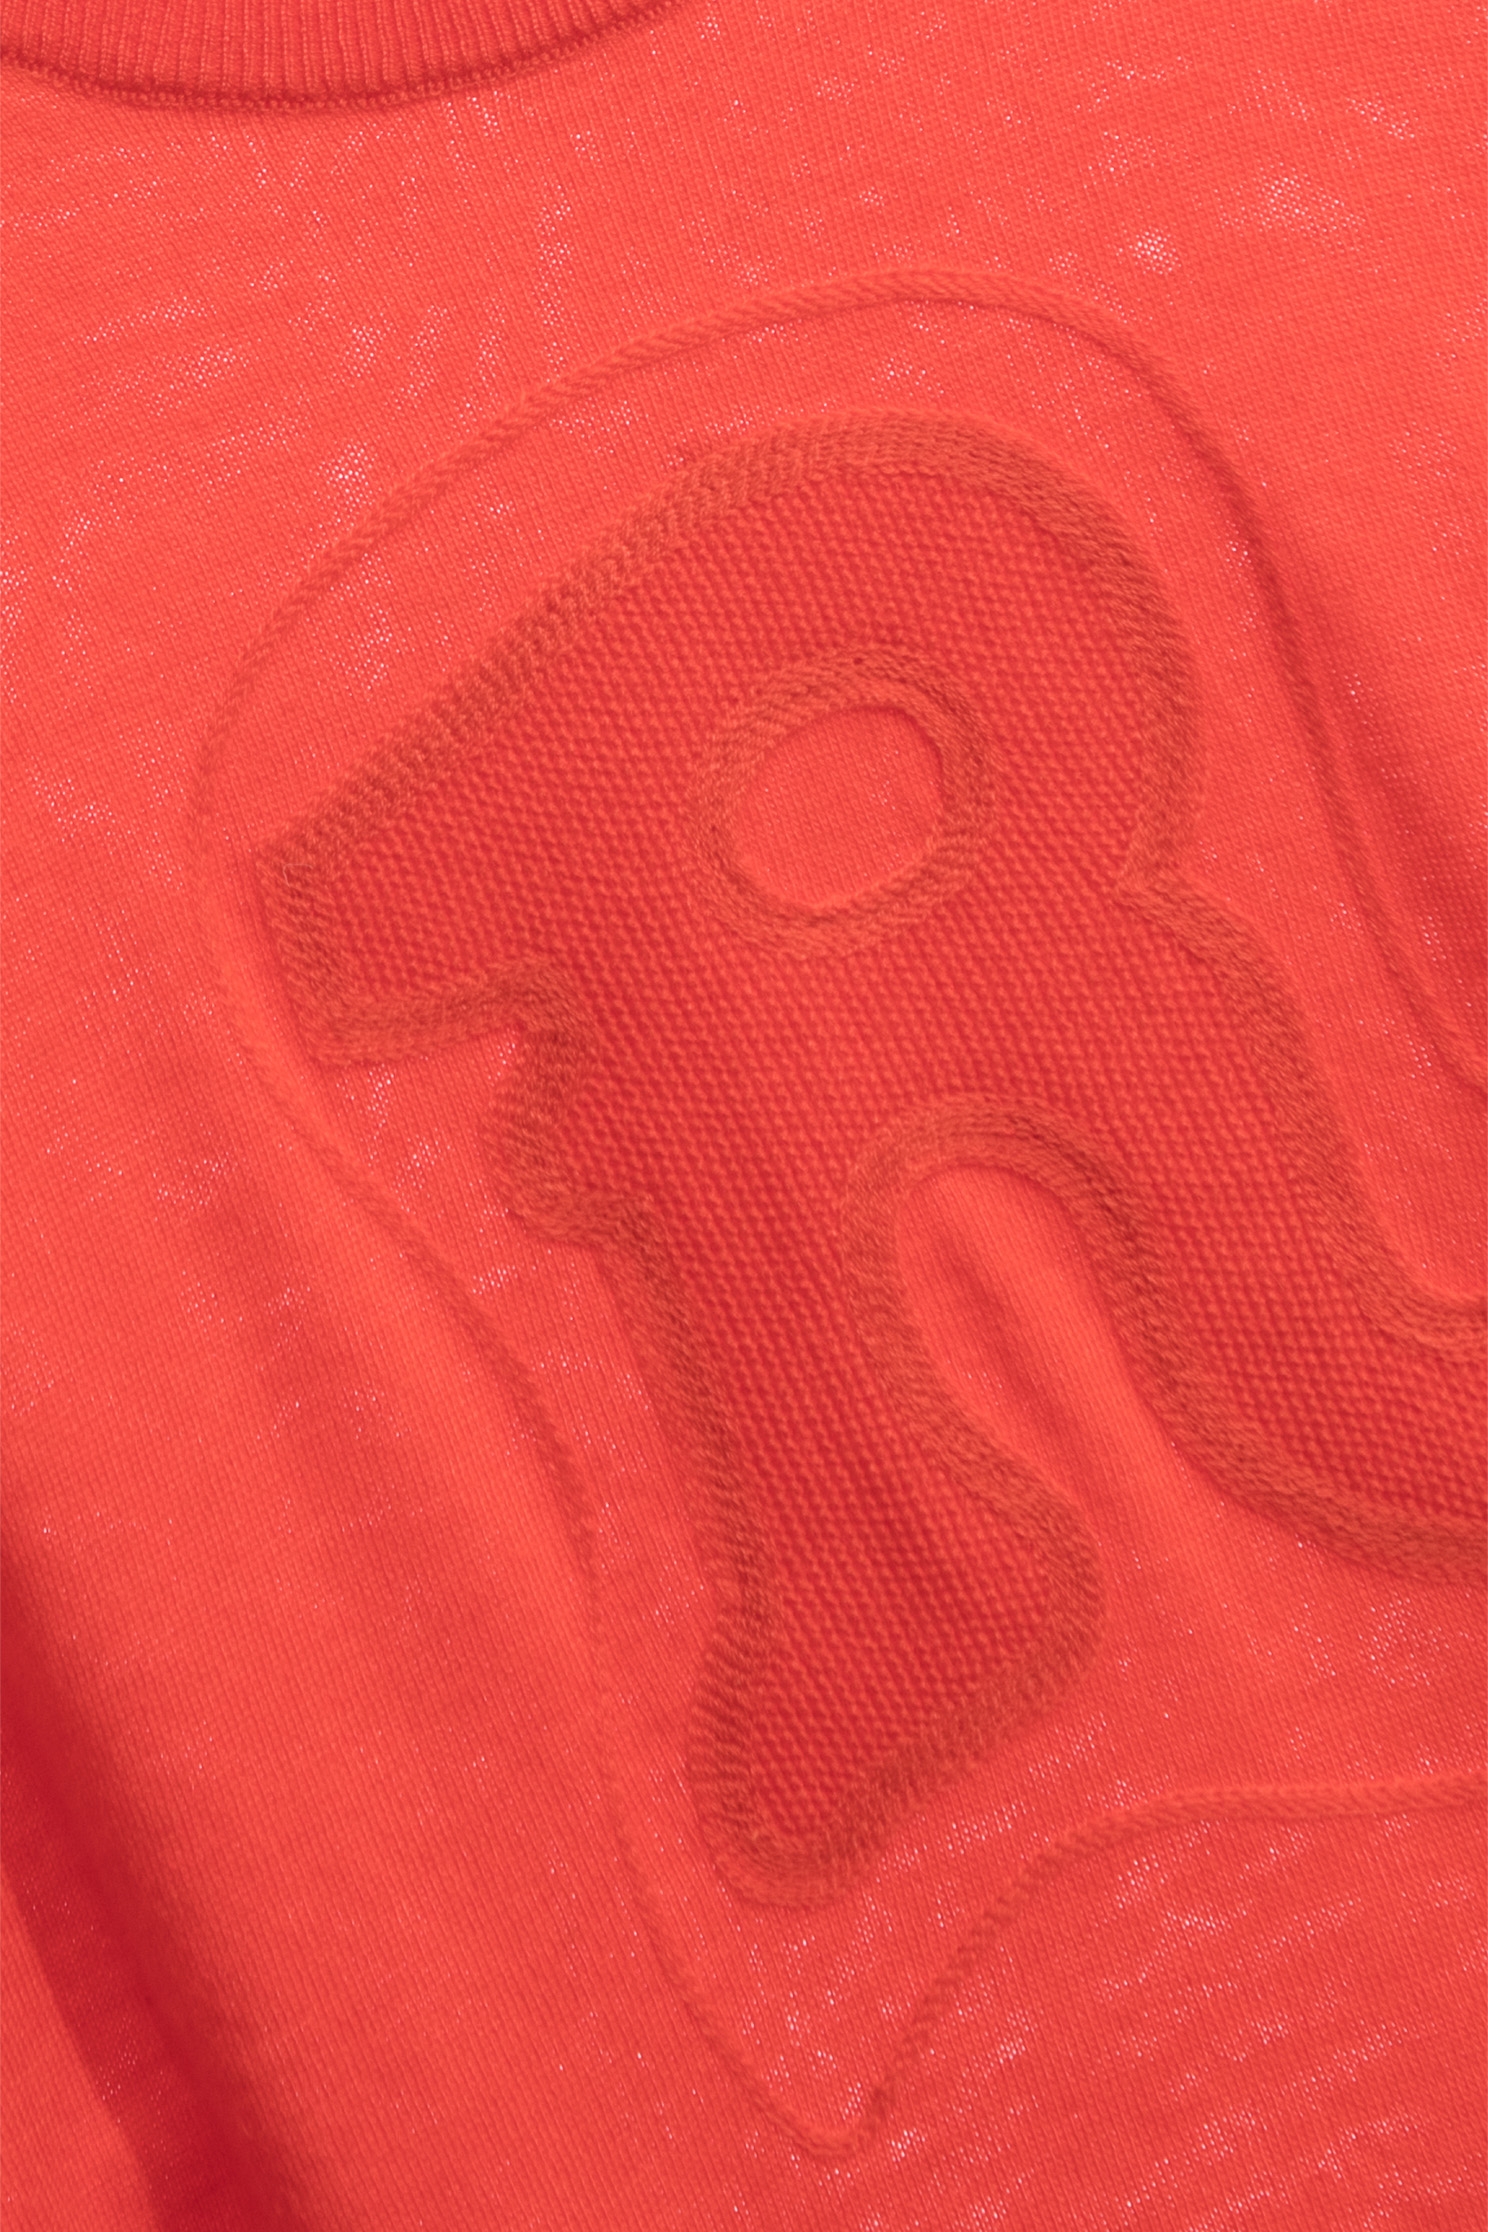 岩漿橘電繡R字針織單品岩漿橘電繡R字針織單品,新年開運特輯,派對特輯,秋冬穿搭,針織,針織衫